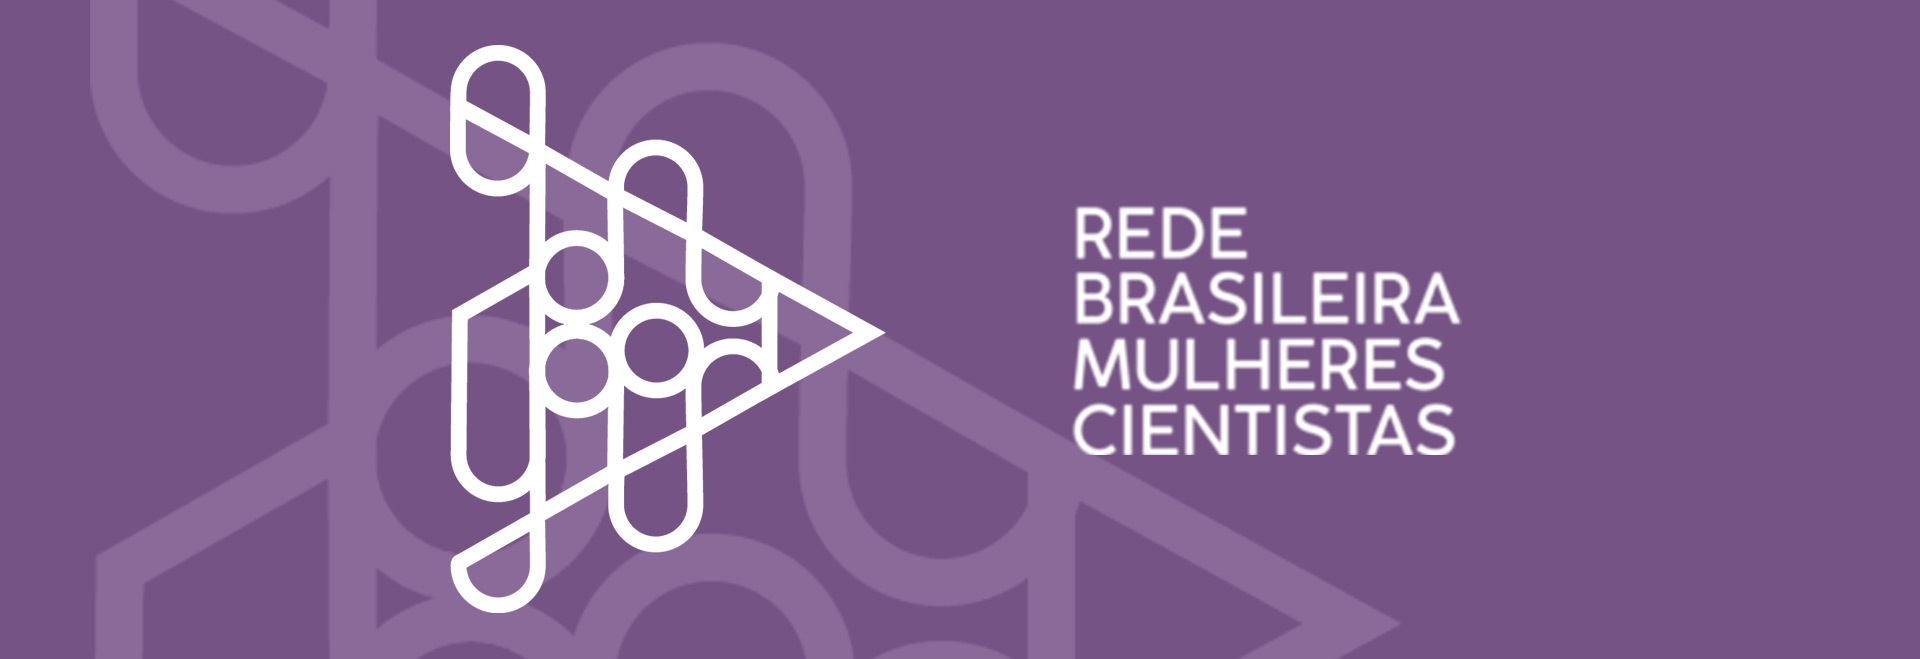 audiodescrição: ilustração com fundo roxo e em branco, os dizeres "rede brasileira de mulheres cientistas"